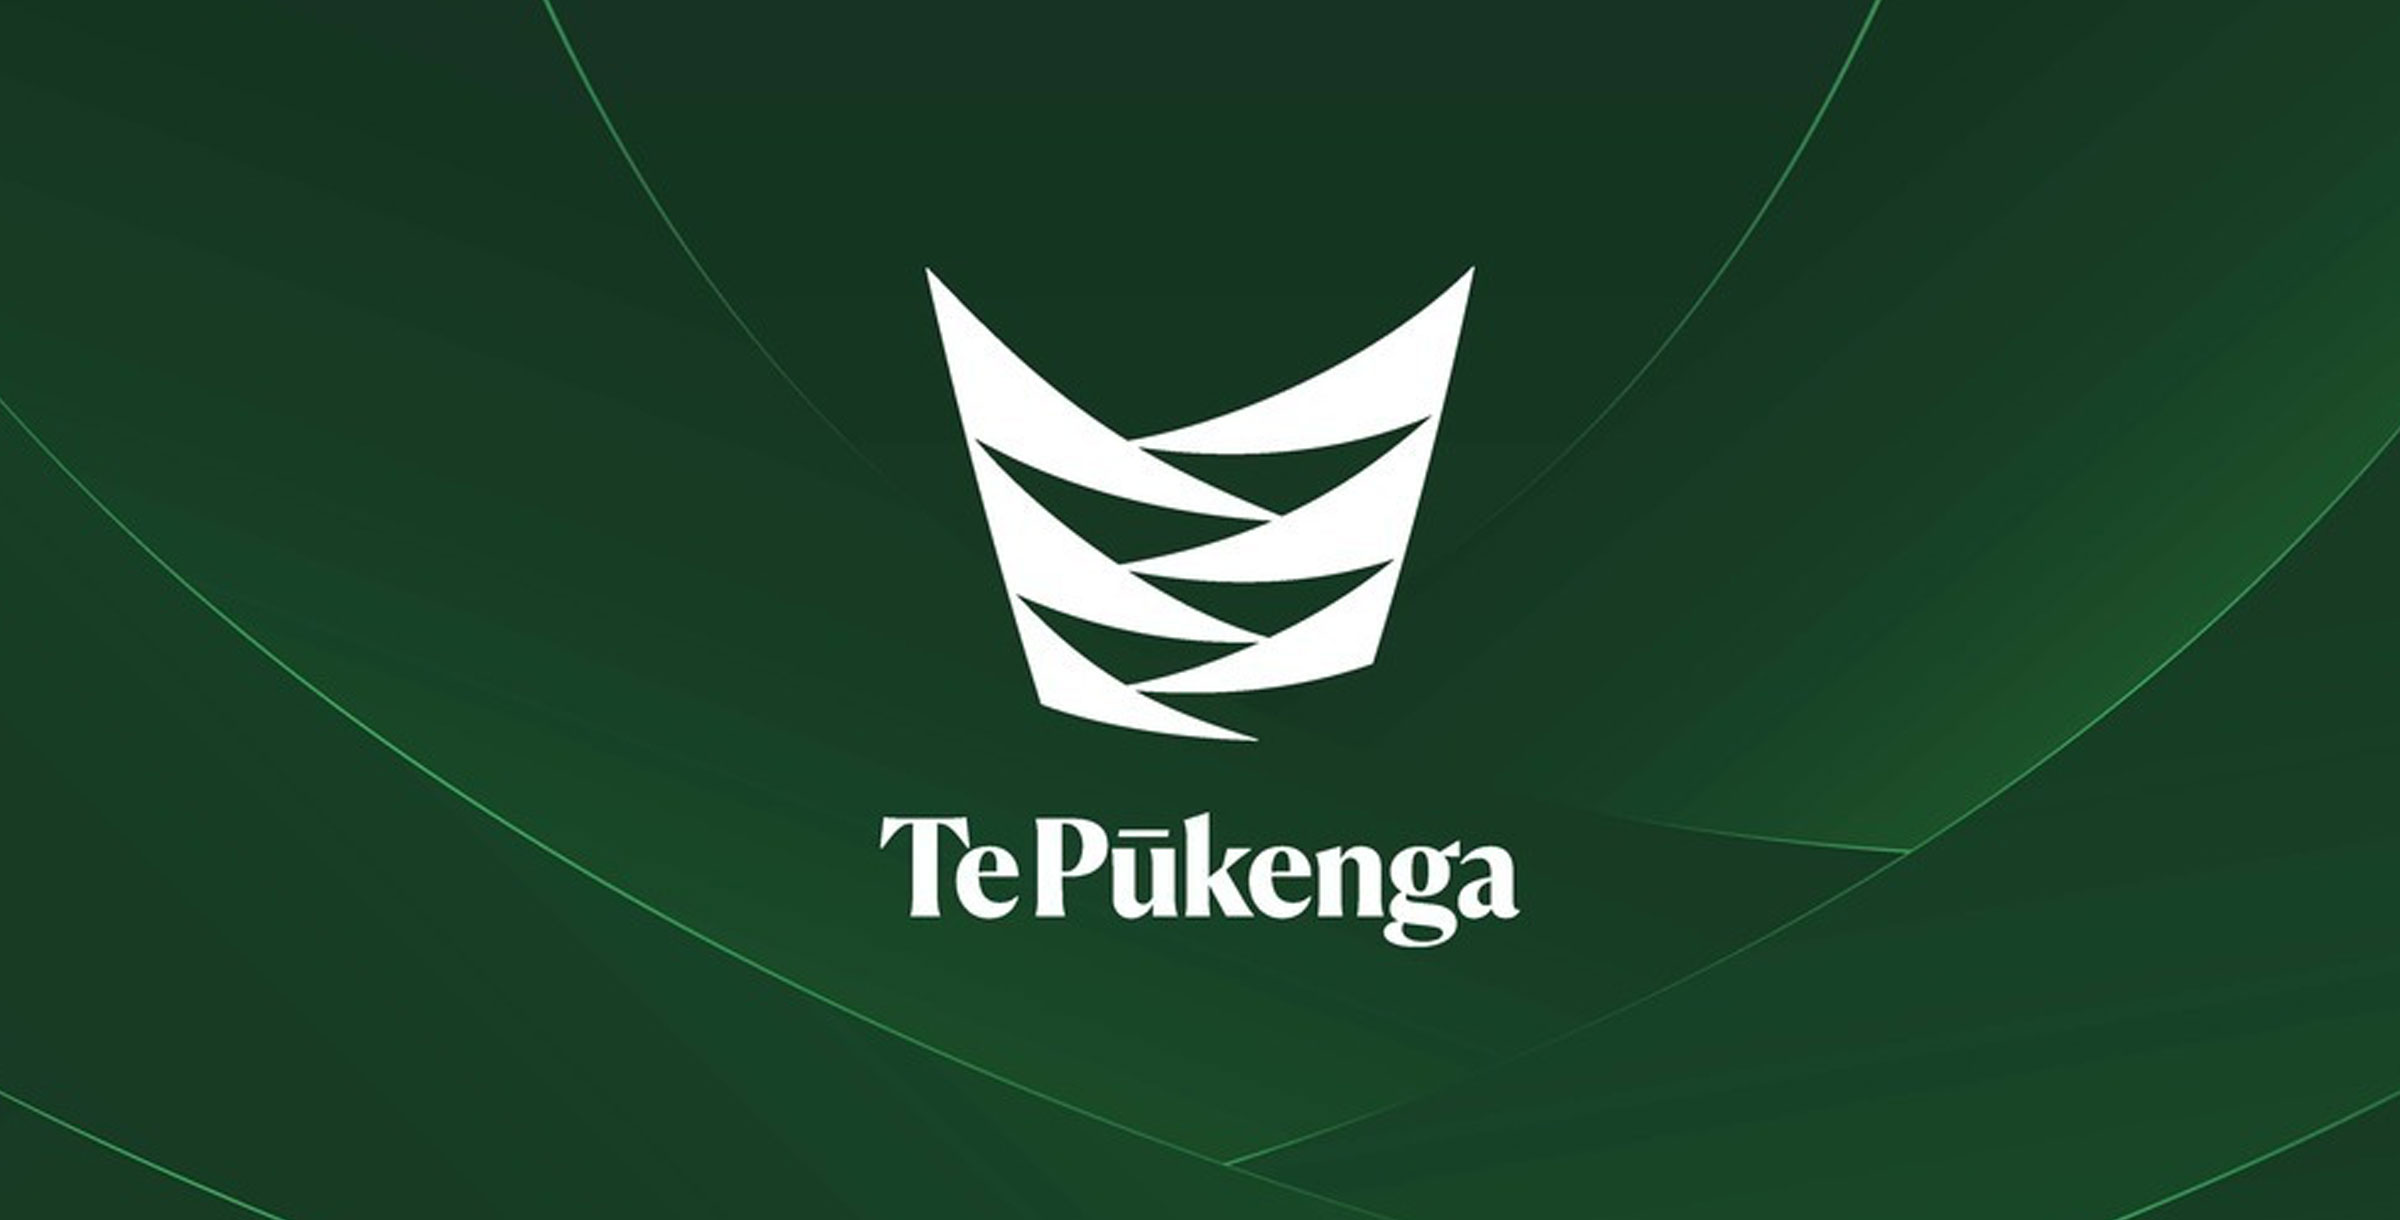 About Te Pukenga Heaader